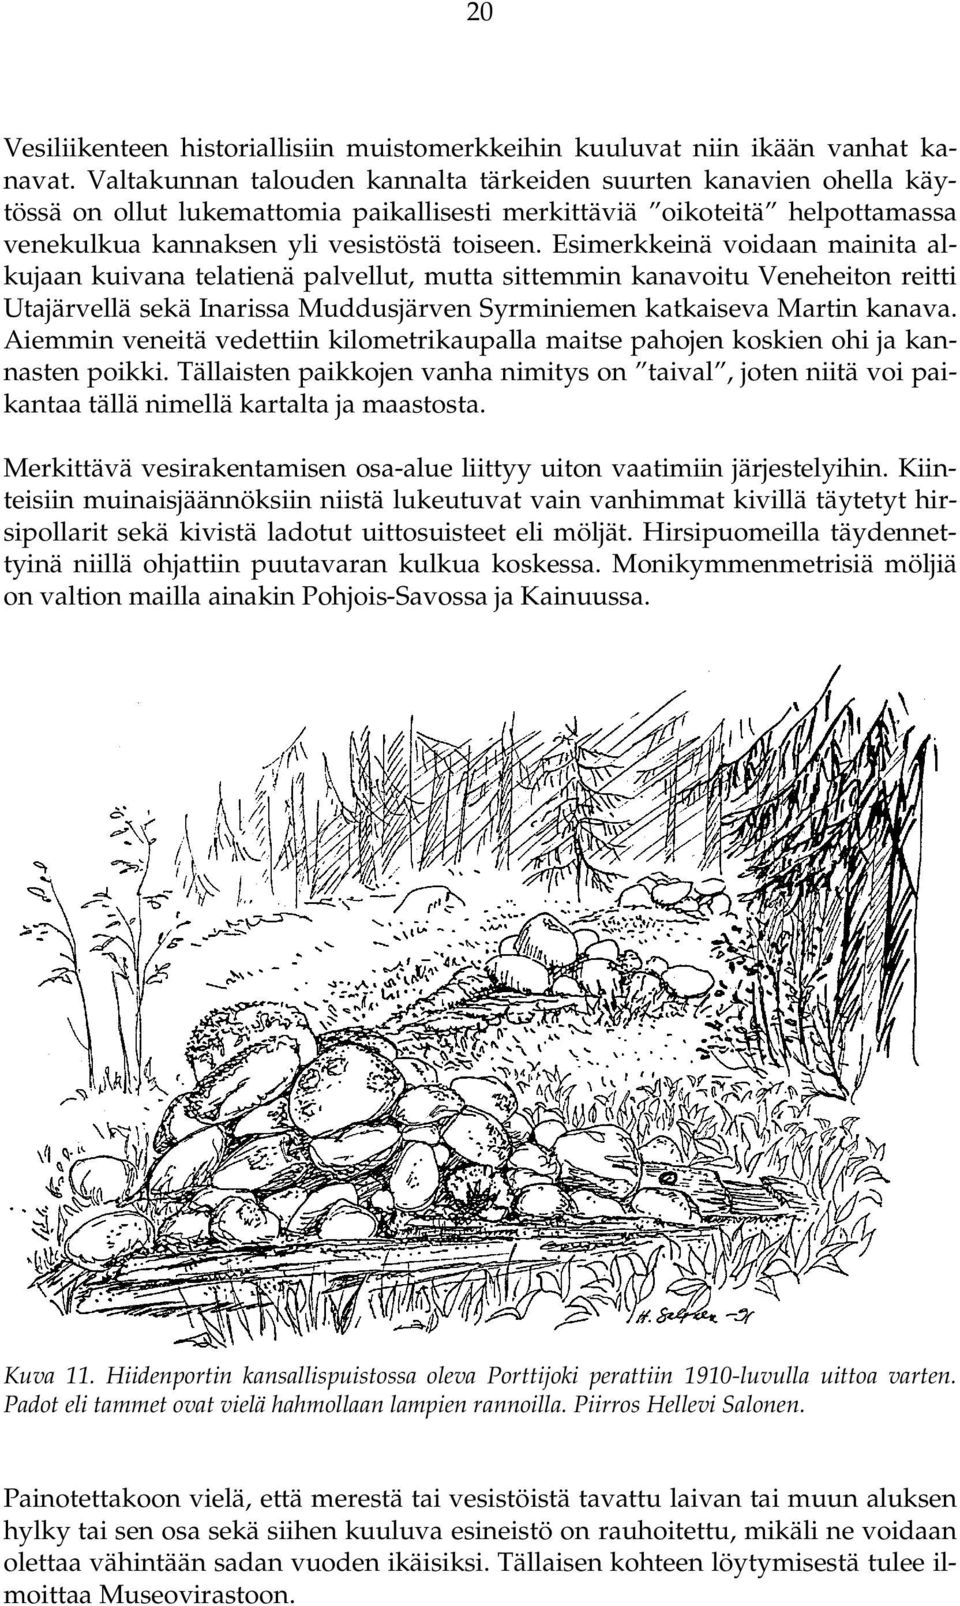 Esimerkkeinä voidaan mainita alkujaan kuivana telatienä palvellut, mutta sittemmin kanavoitu Veneheiton reitti Utajärvellä sekä Inarissa Muddusjärven Syrminiemen katkaiseva Martin kanava.